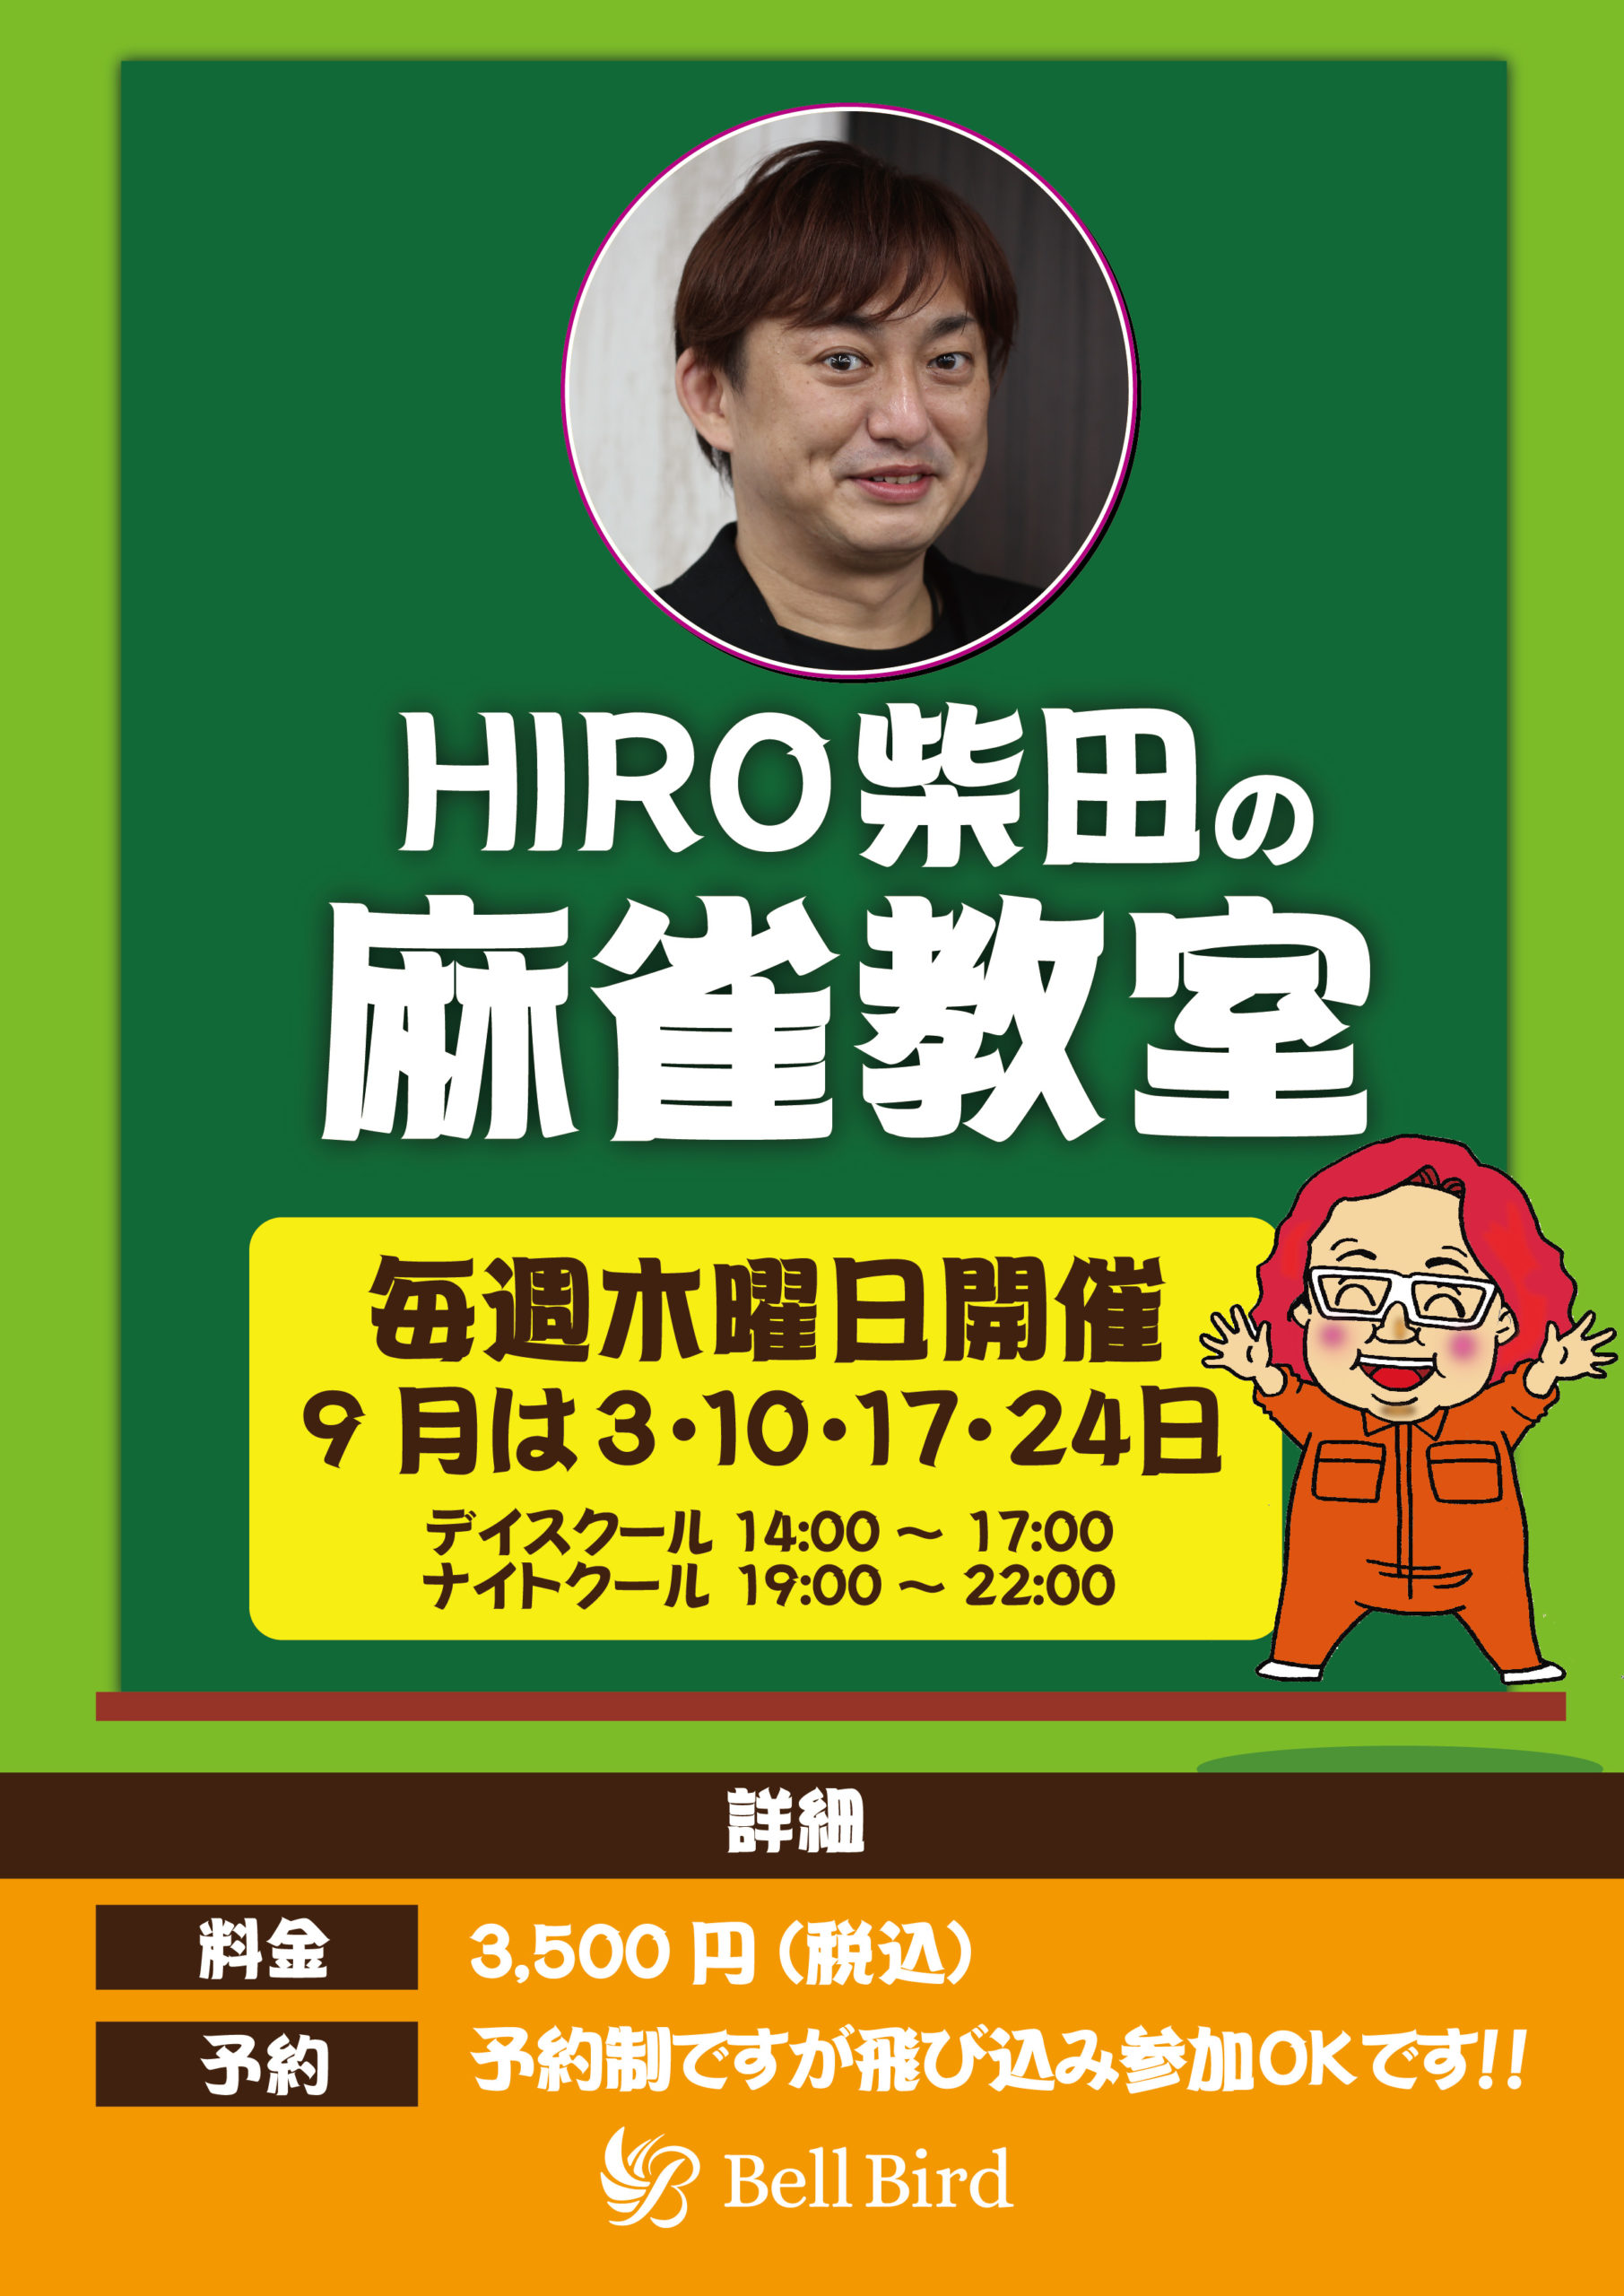 HIRO柴田_202009